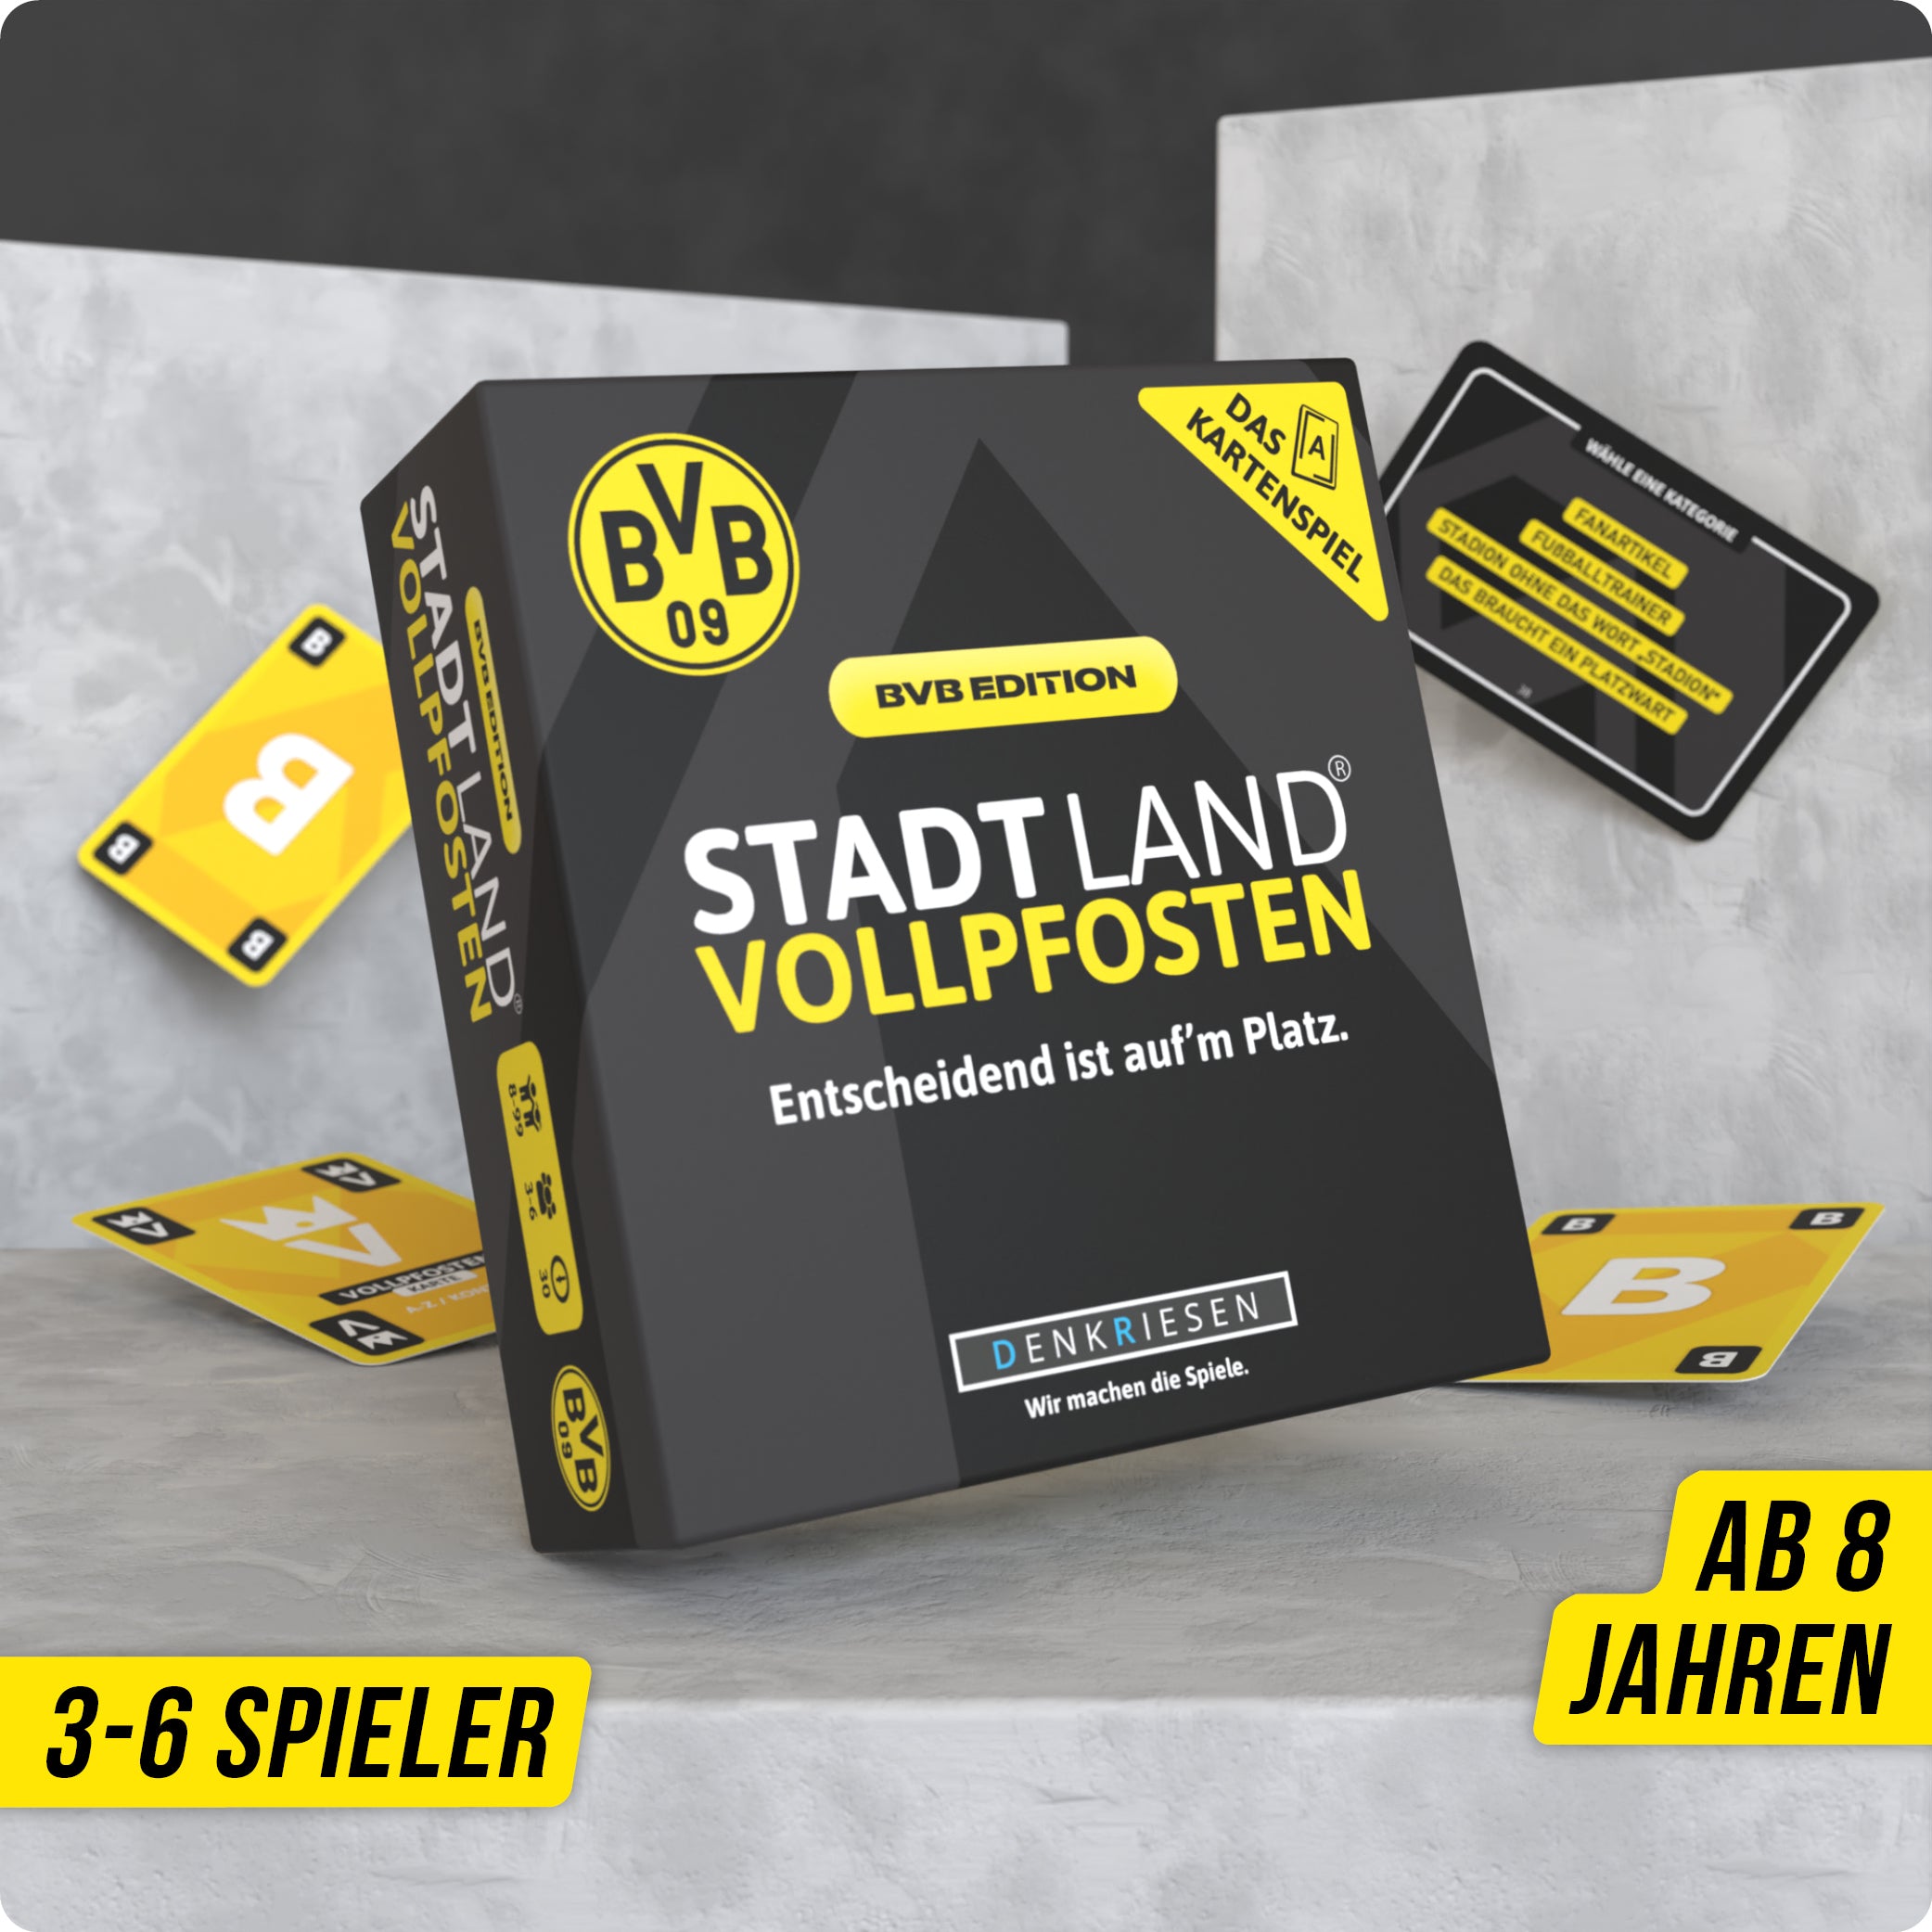 STADT LAND VOLLPFOSTEN® – Das Kartenspiel - BVB EDITION - "Entscheidend ist auf'm Platz."